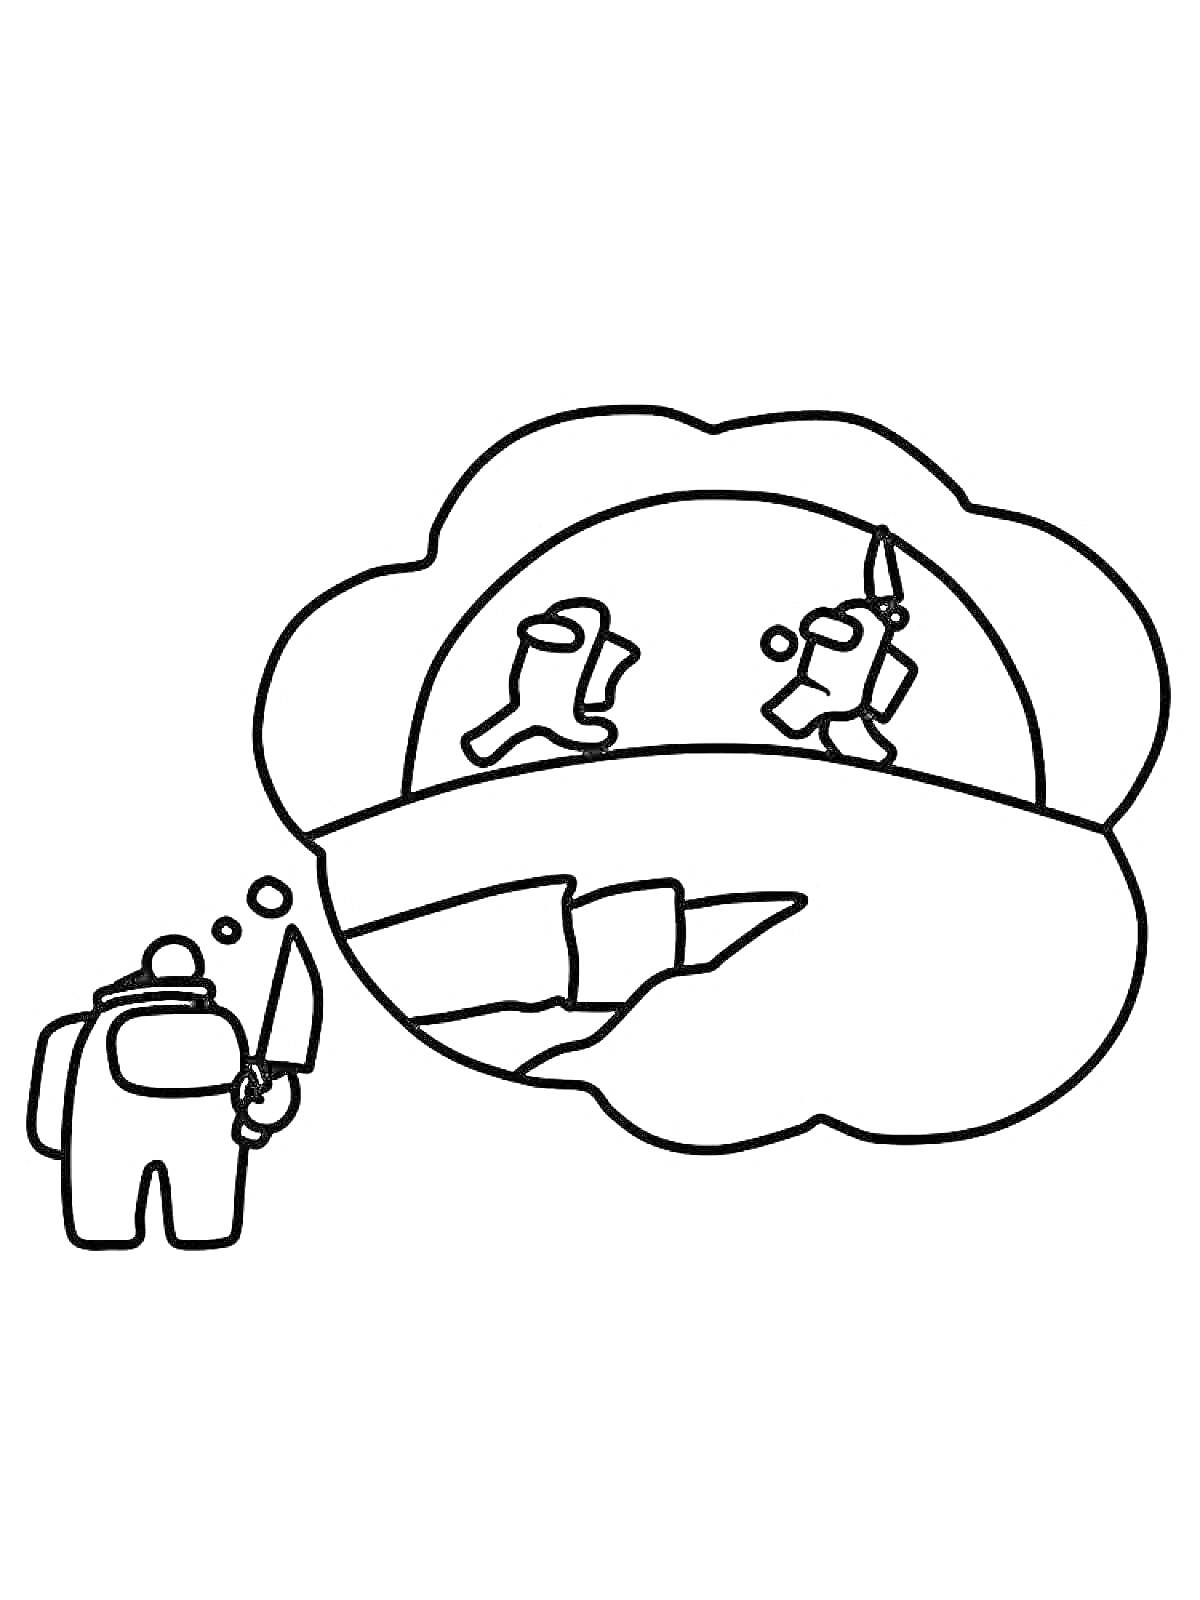 Раскраска Персонаж Амонг Ас с ножом и мыслящее облачко с двумя дерущимися персонажами на фоне ущелья